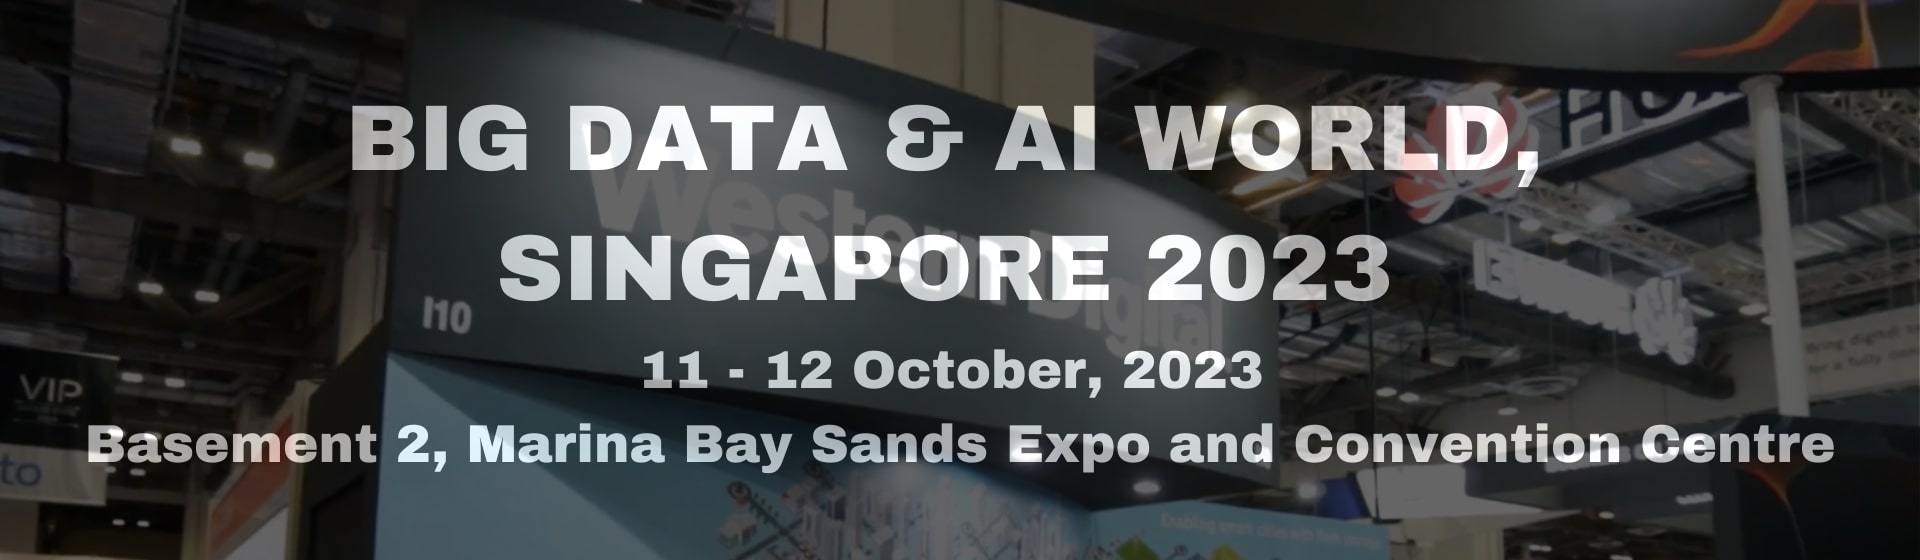 BIG DATA & AI WORLD, SINGAPORE 2023